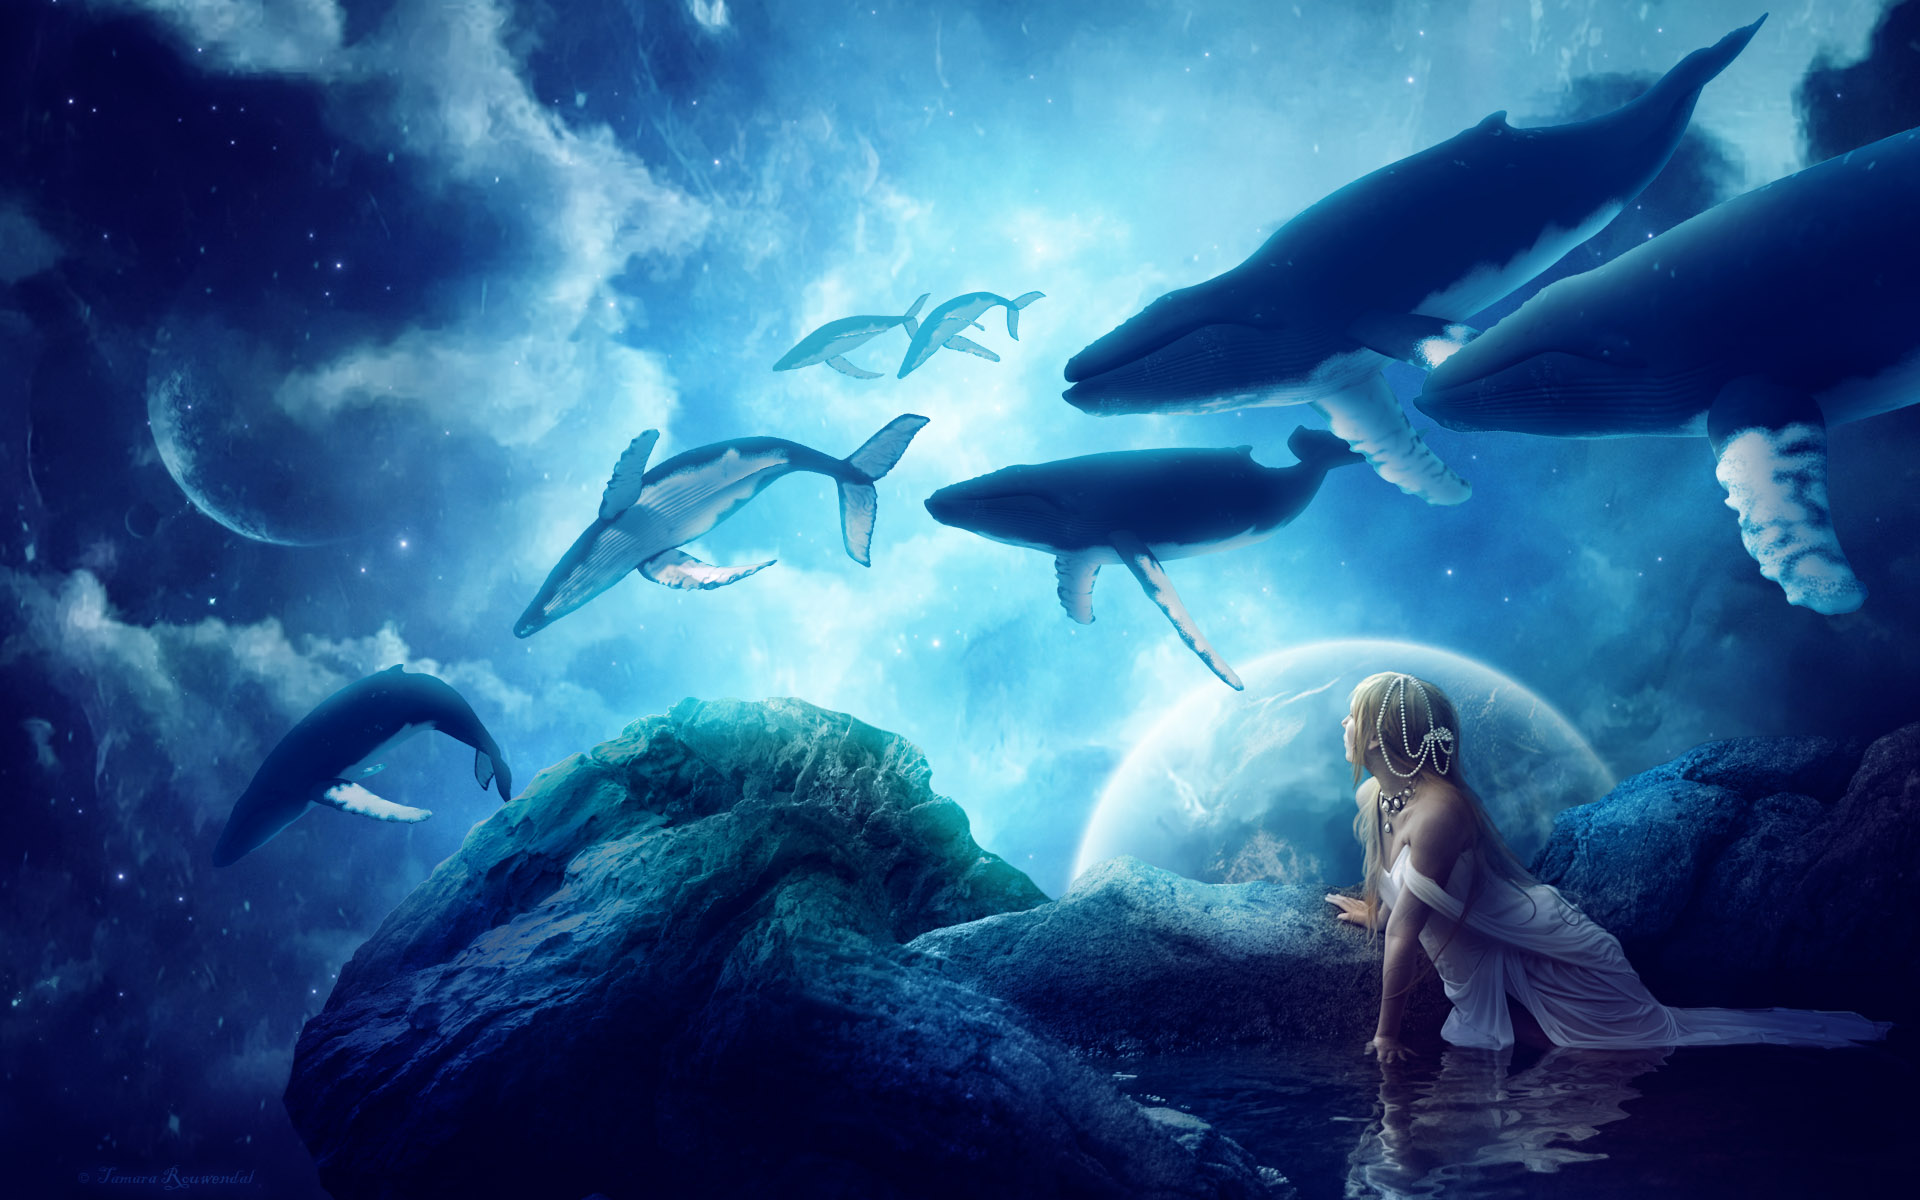 Whales Dream691626155 - Whales Dream - Whales, Nature, Dream